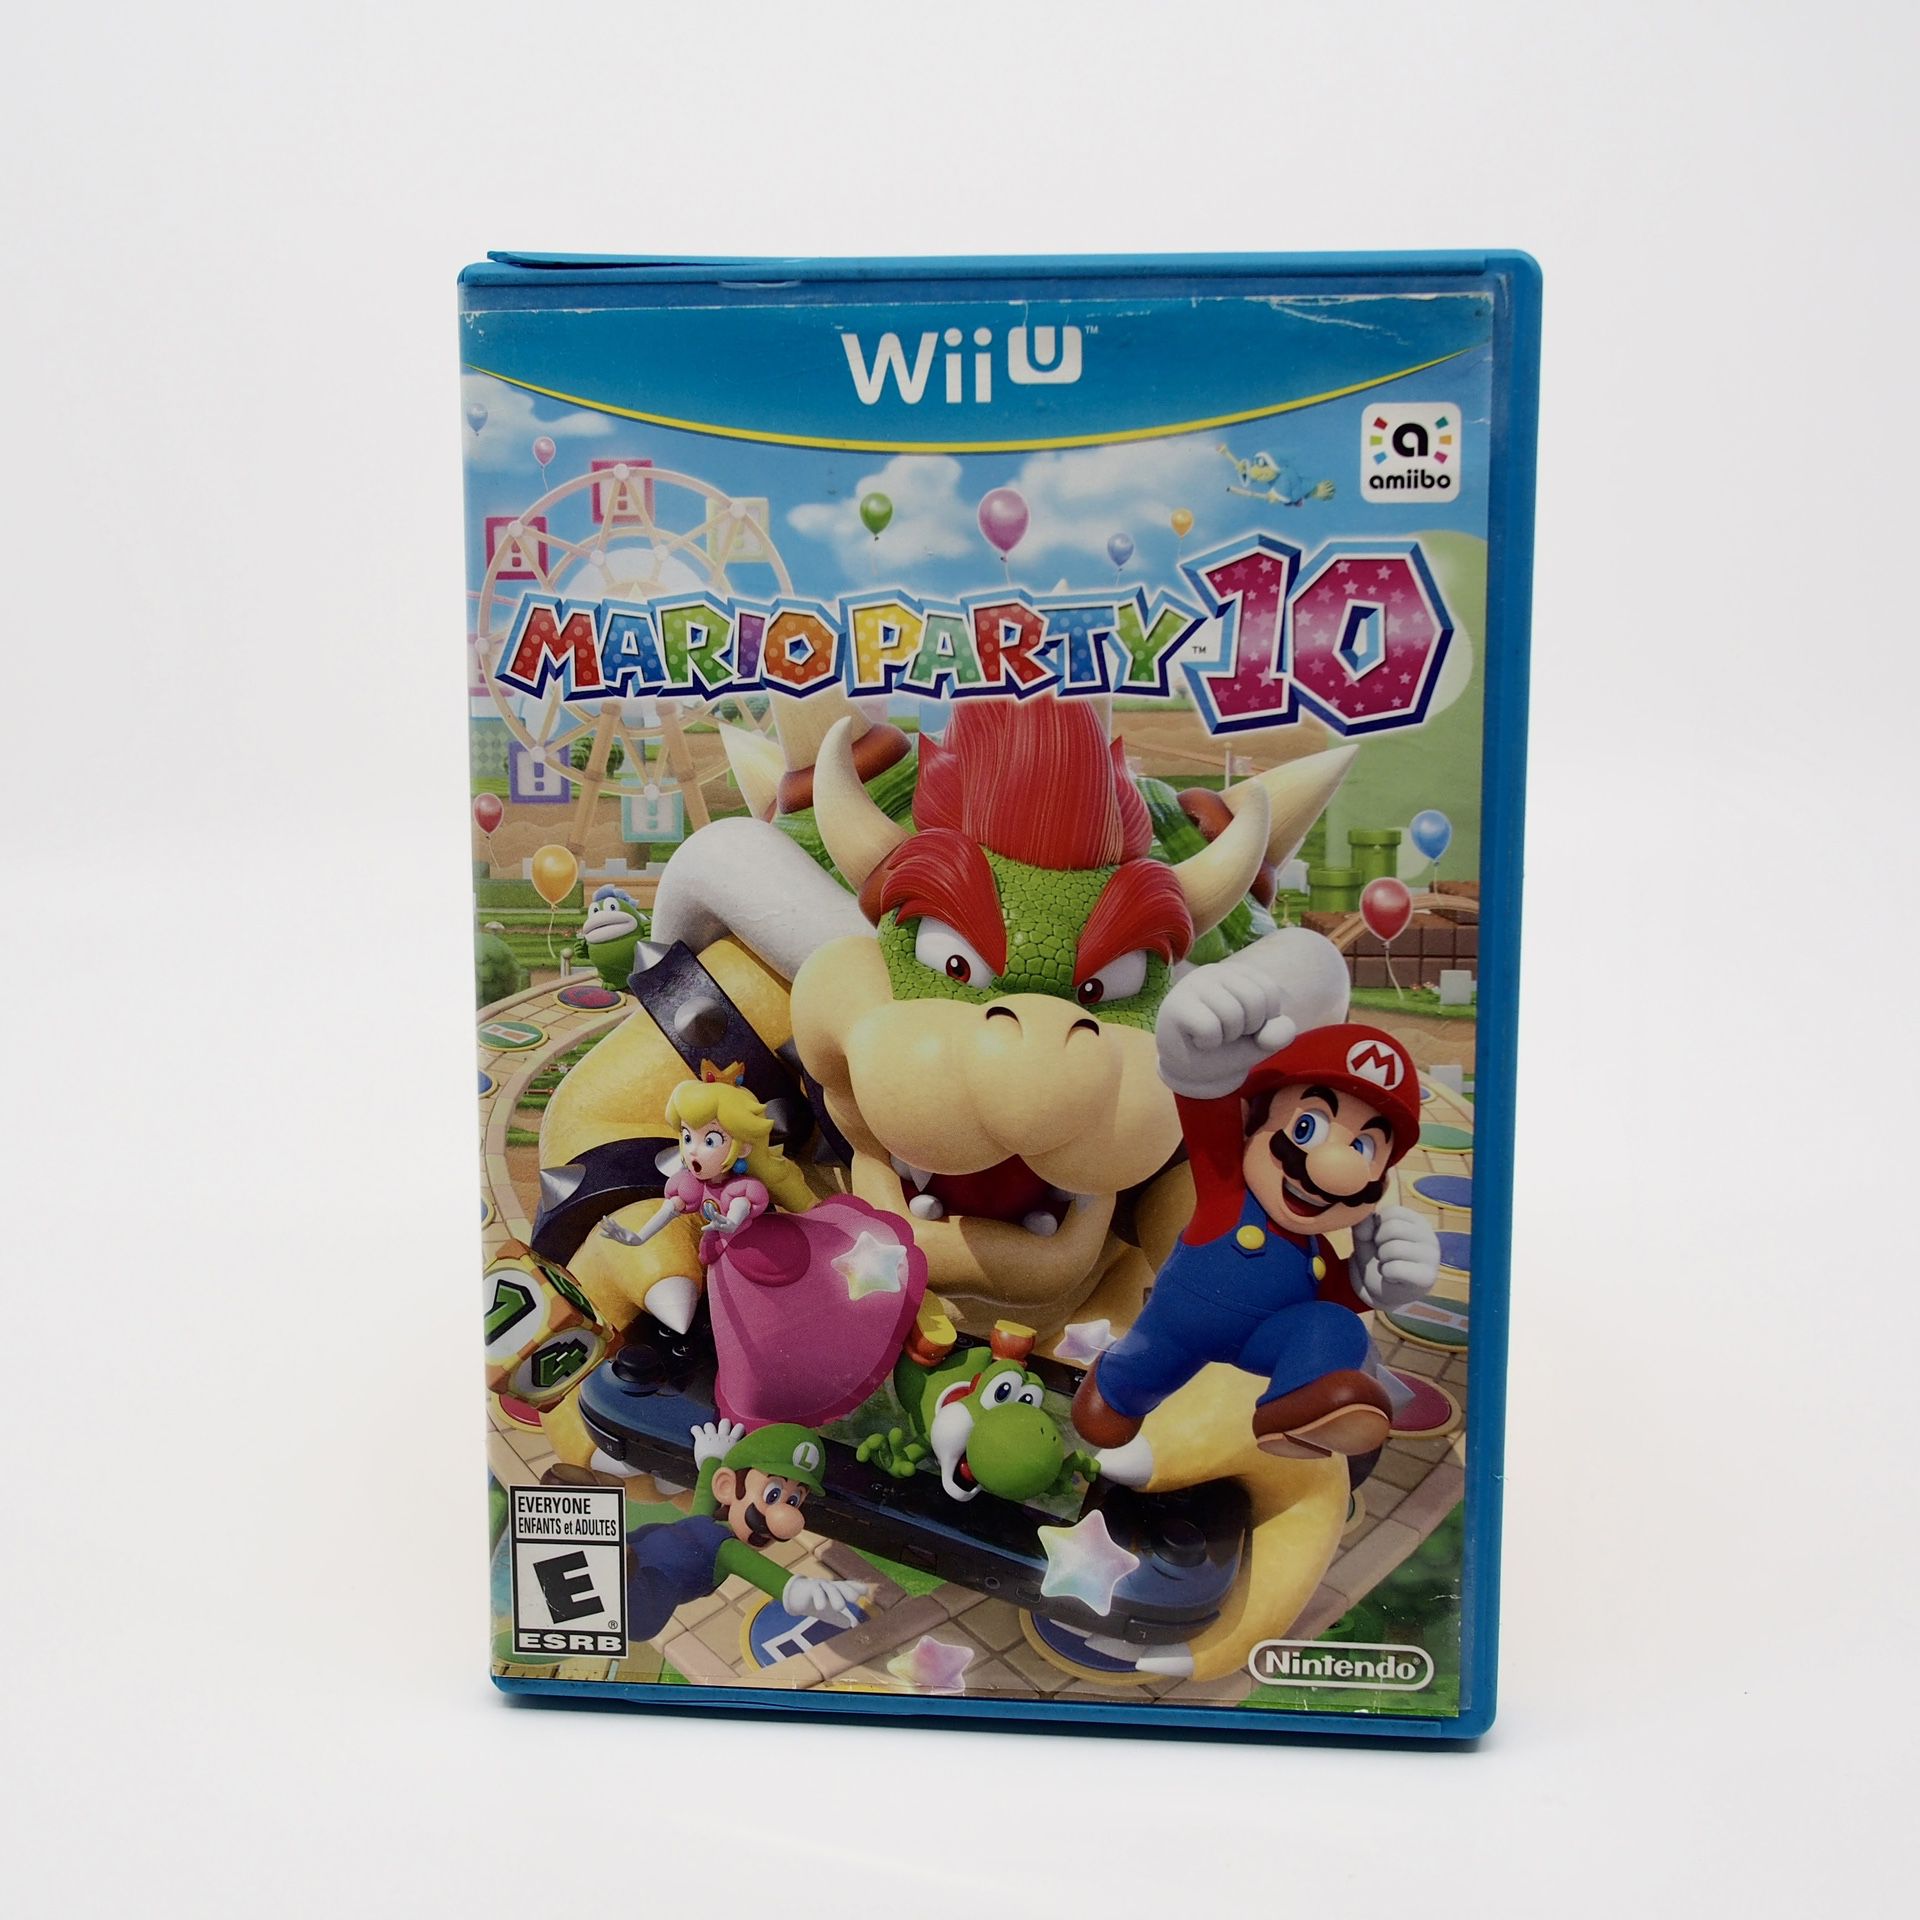 Mario party 10 WiiU